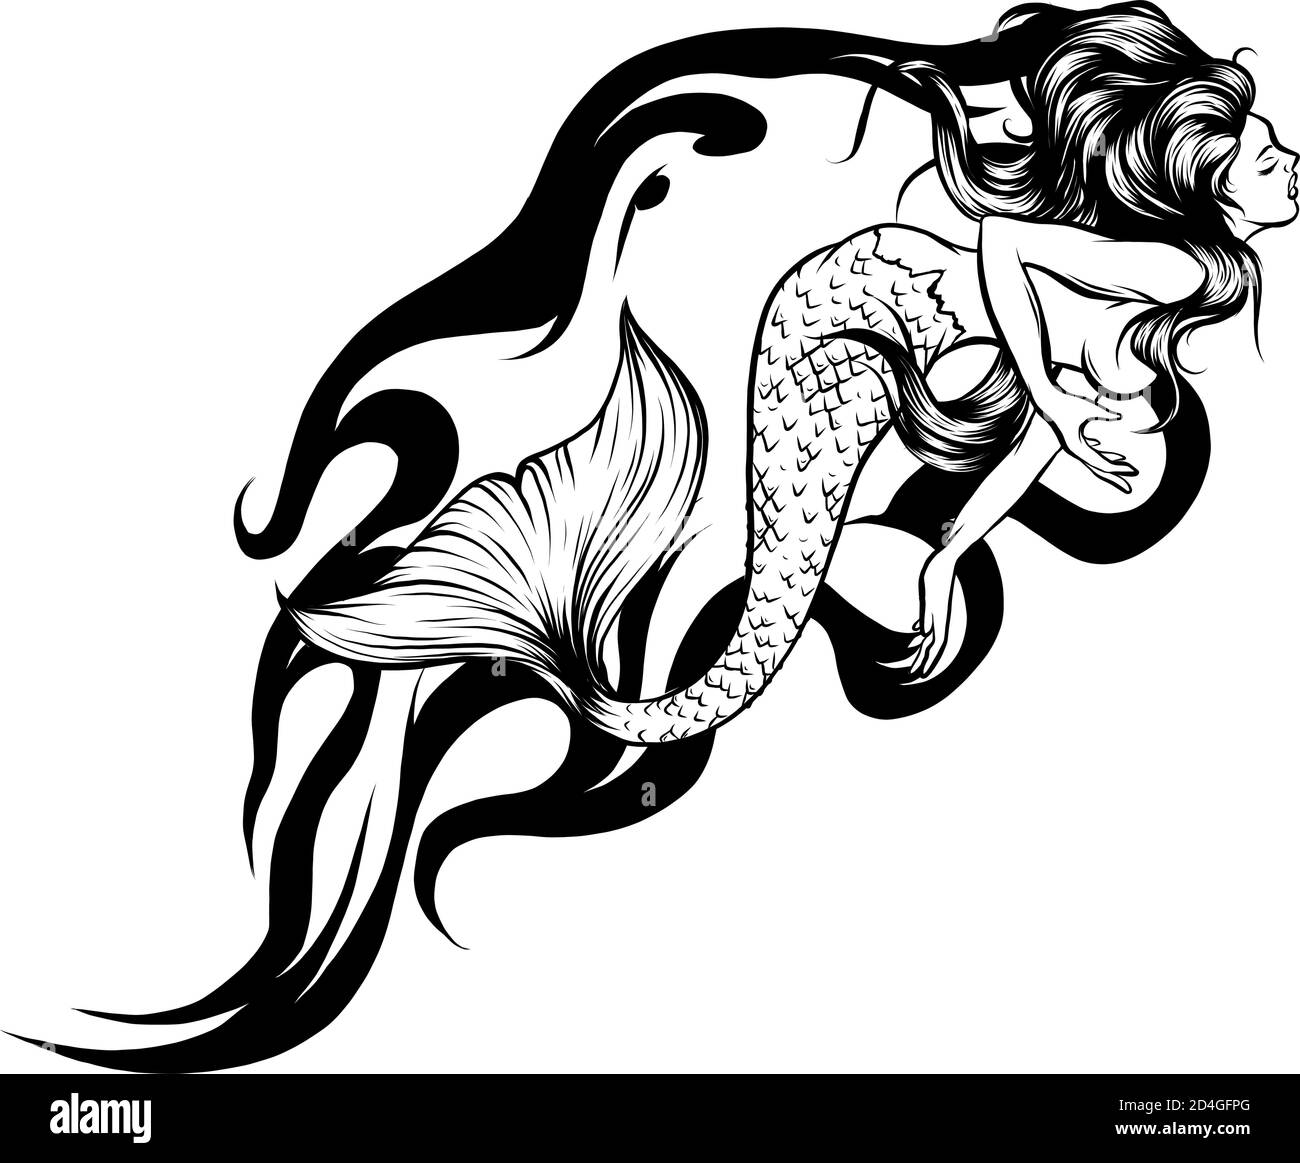 Cute cartoon mermaids. Siren. Sea theme. vector illustration Stock Vector